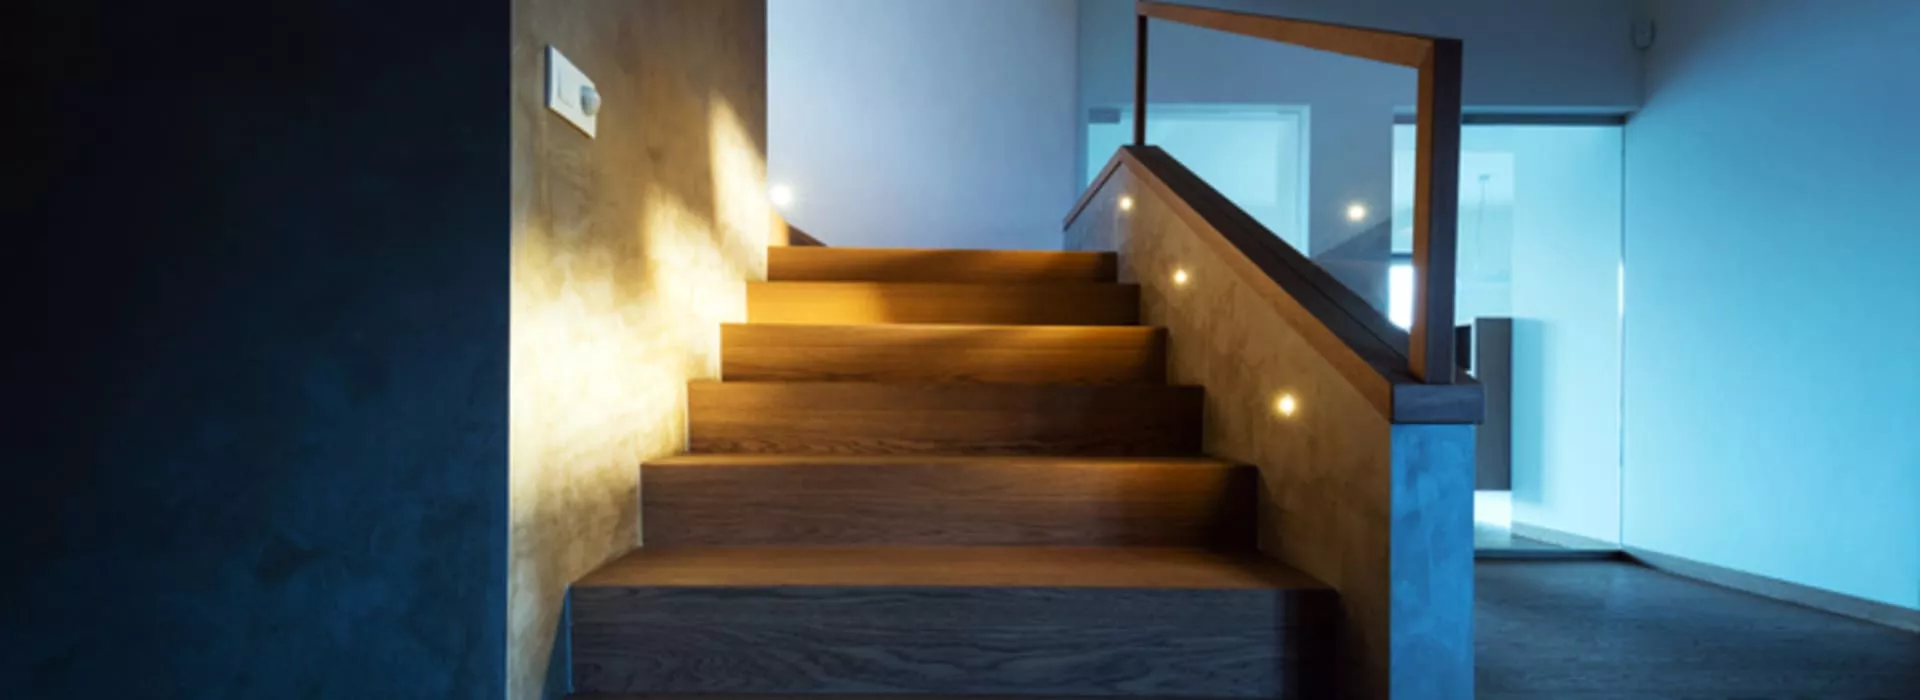 Iluminación escaleras de interior: claves que debes conocer